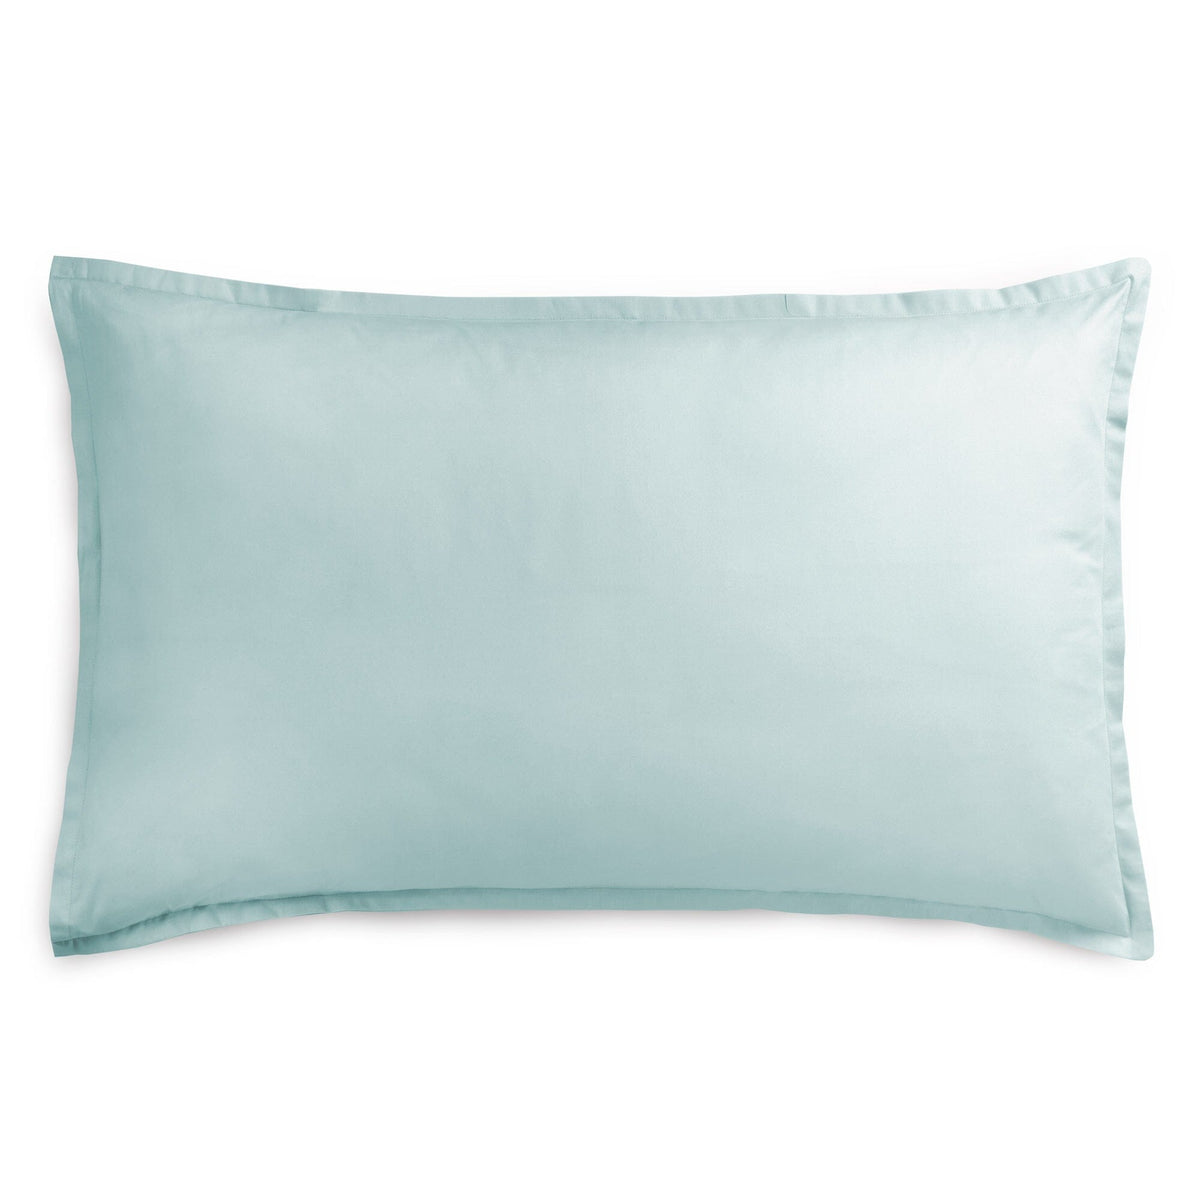 Pillowcase in Pure Cotton Percale  200TC solid color - Milano